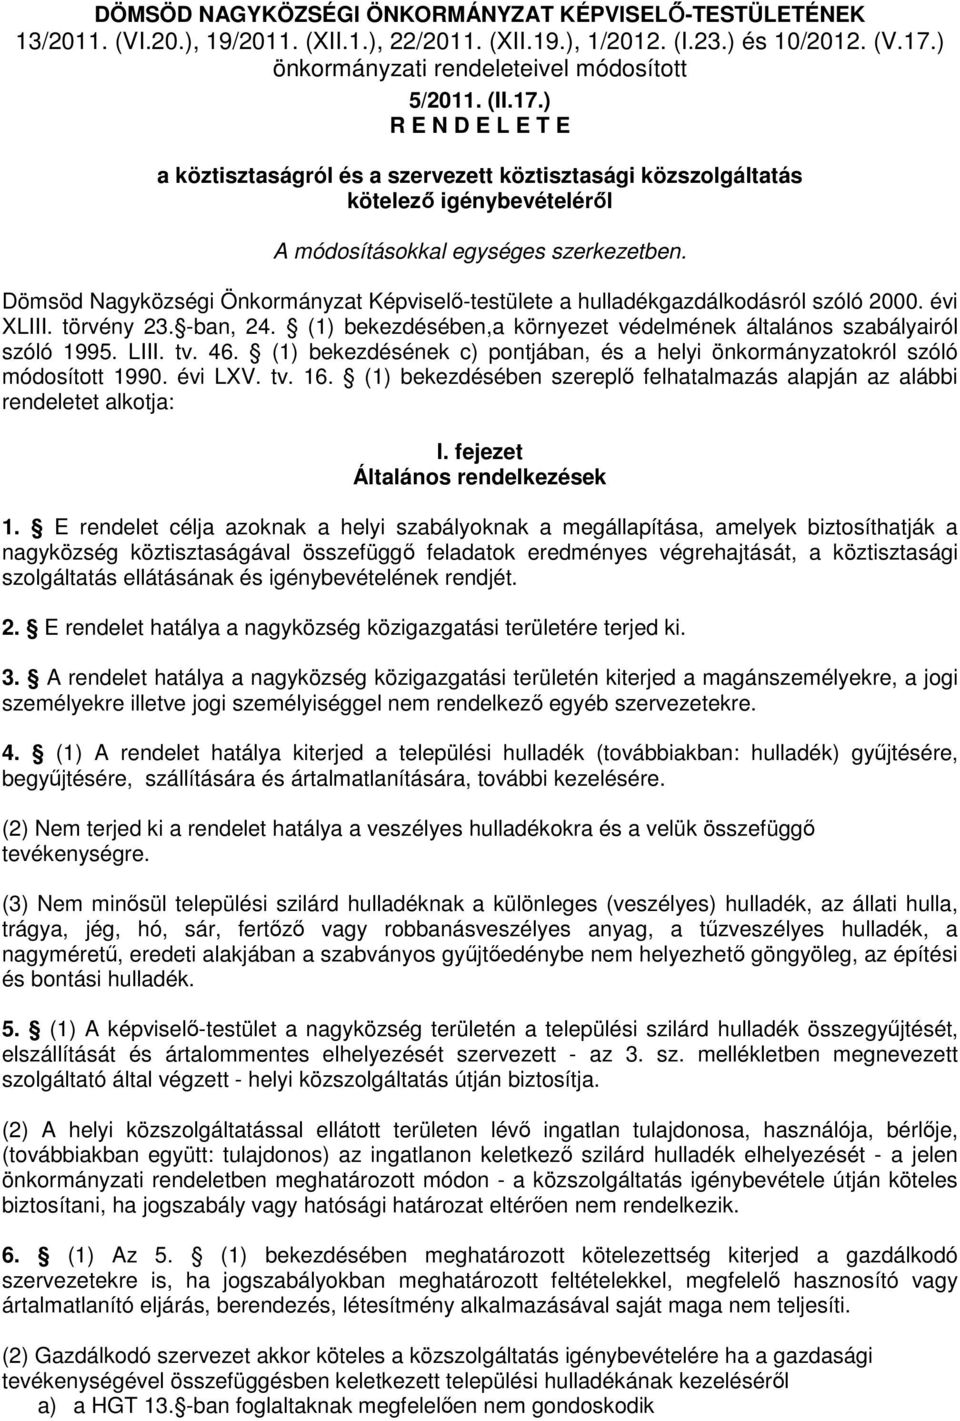 Dömsöd Nagyközségi Önkormányzat Képviselı-testülete a hulladékgazdálkodásról szóló 2000. évi XLIII. törvény 23. -ban, 24. (1) bekezdésében,a környezet védelmének általános szabályairól szóló 1995.